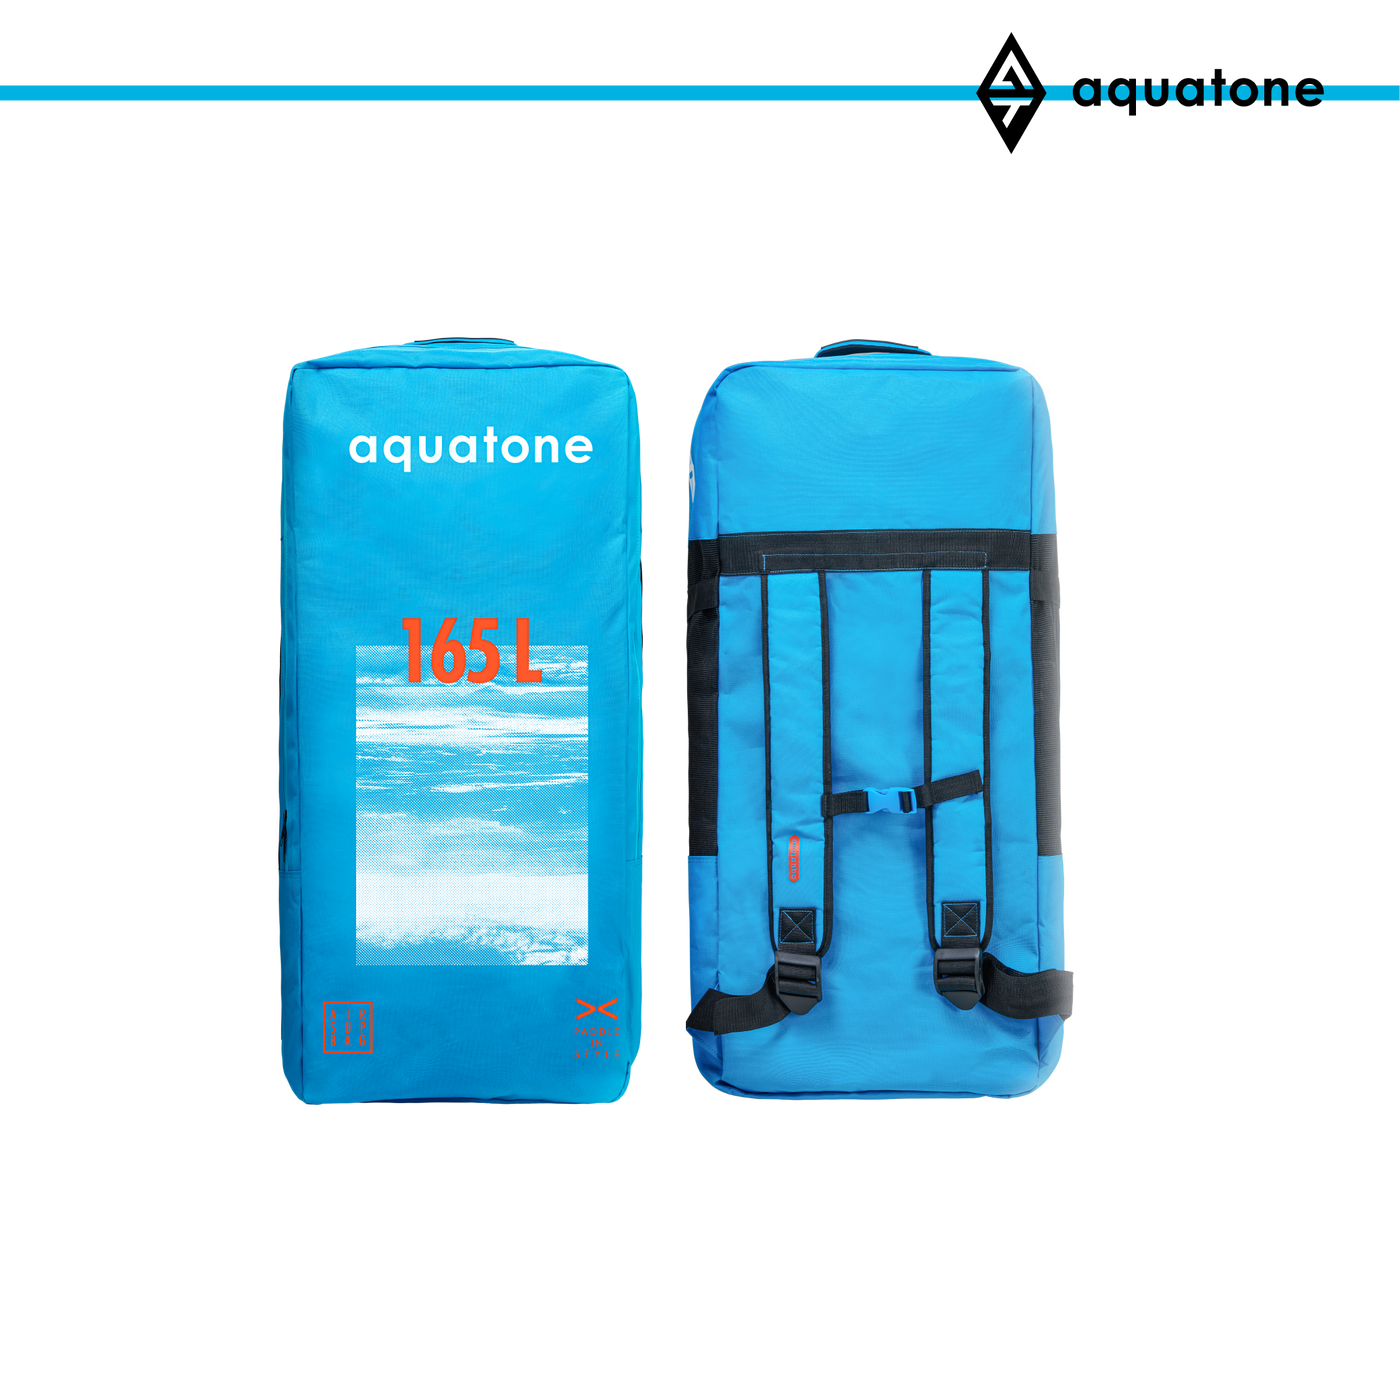 Aquatone 165L SUP Backpack